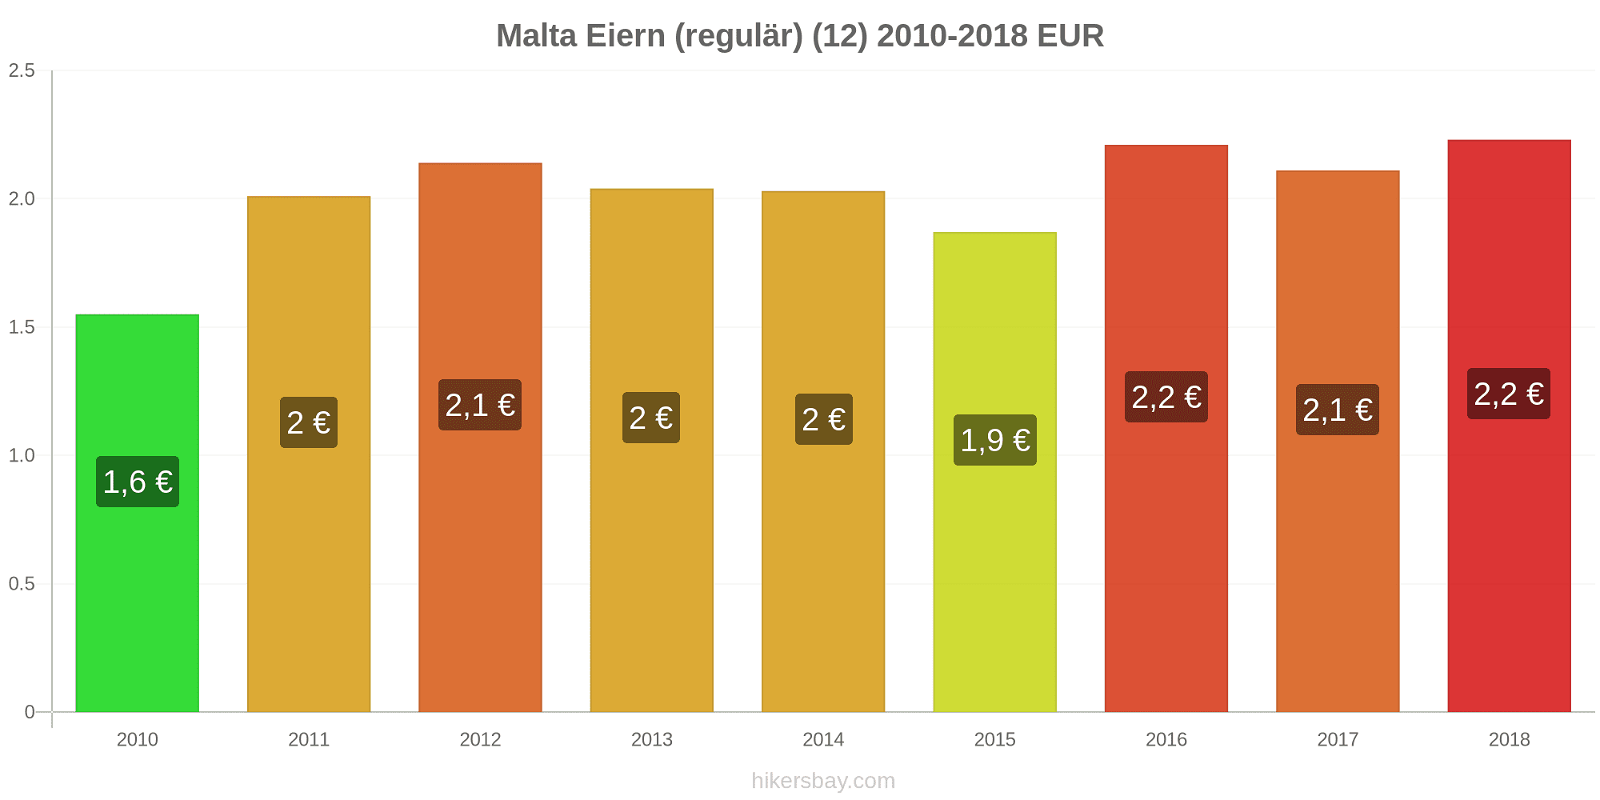 Malta Preisänderungen Eier (regelmäßig) (12) hikersbay.com